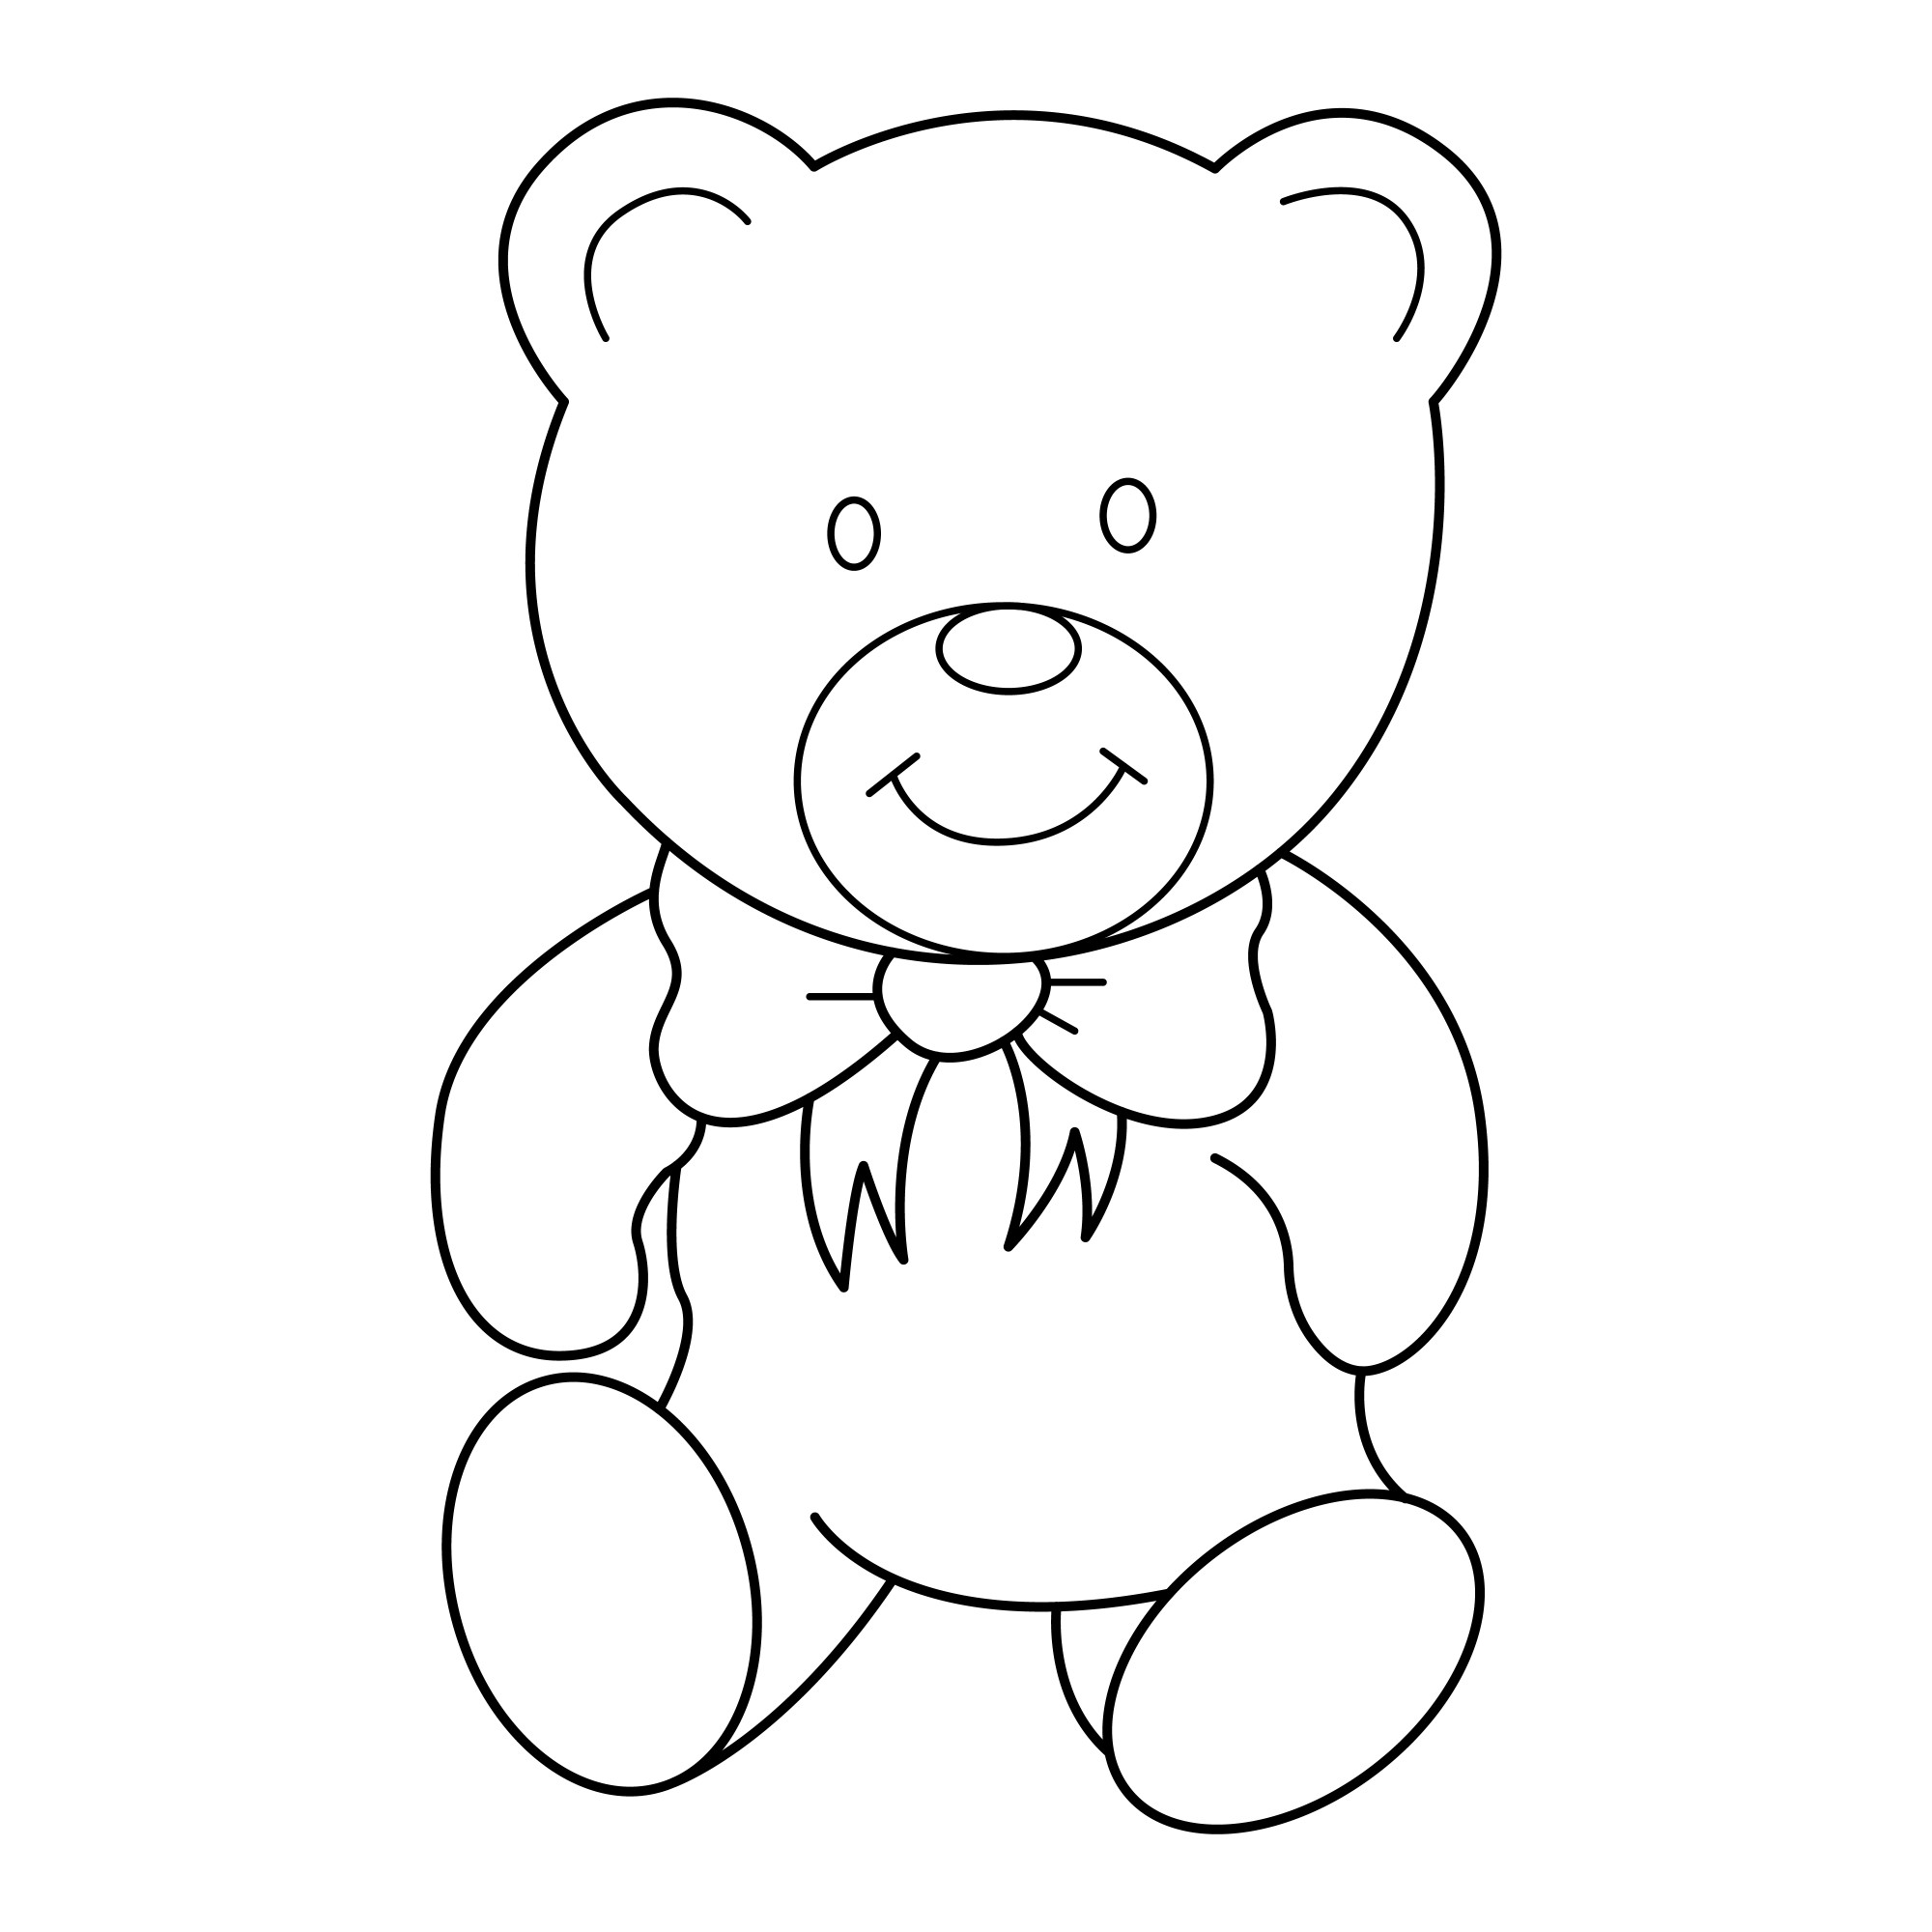 Раскраска для детей: медвежонок с бантиком